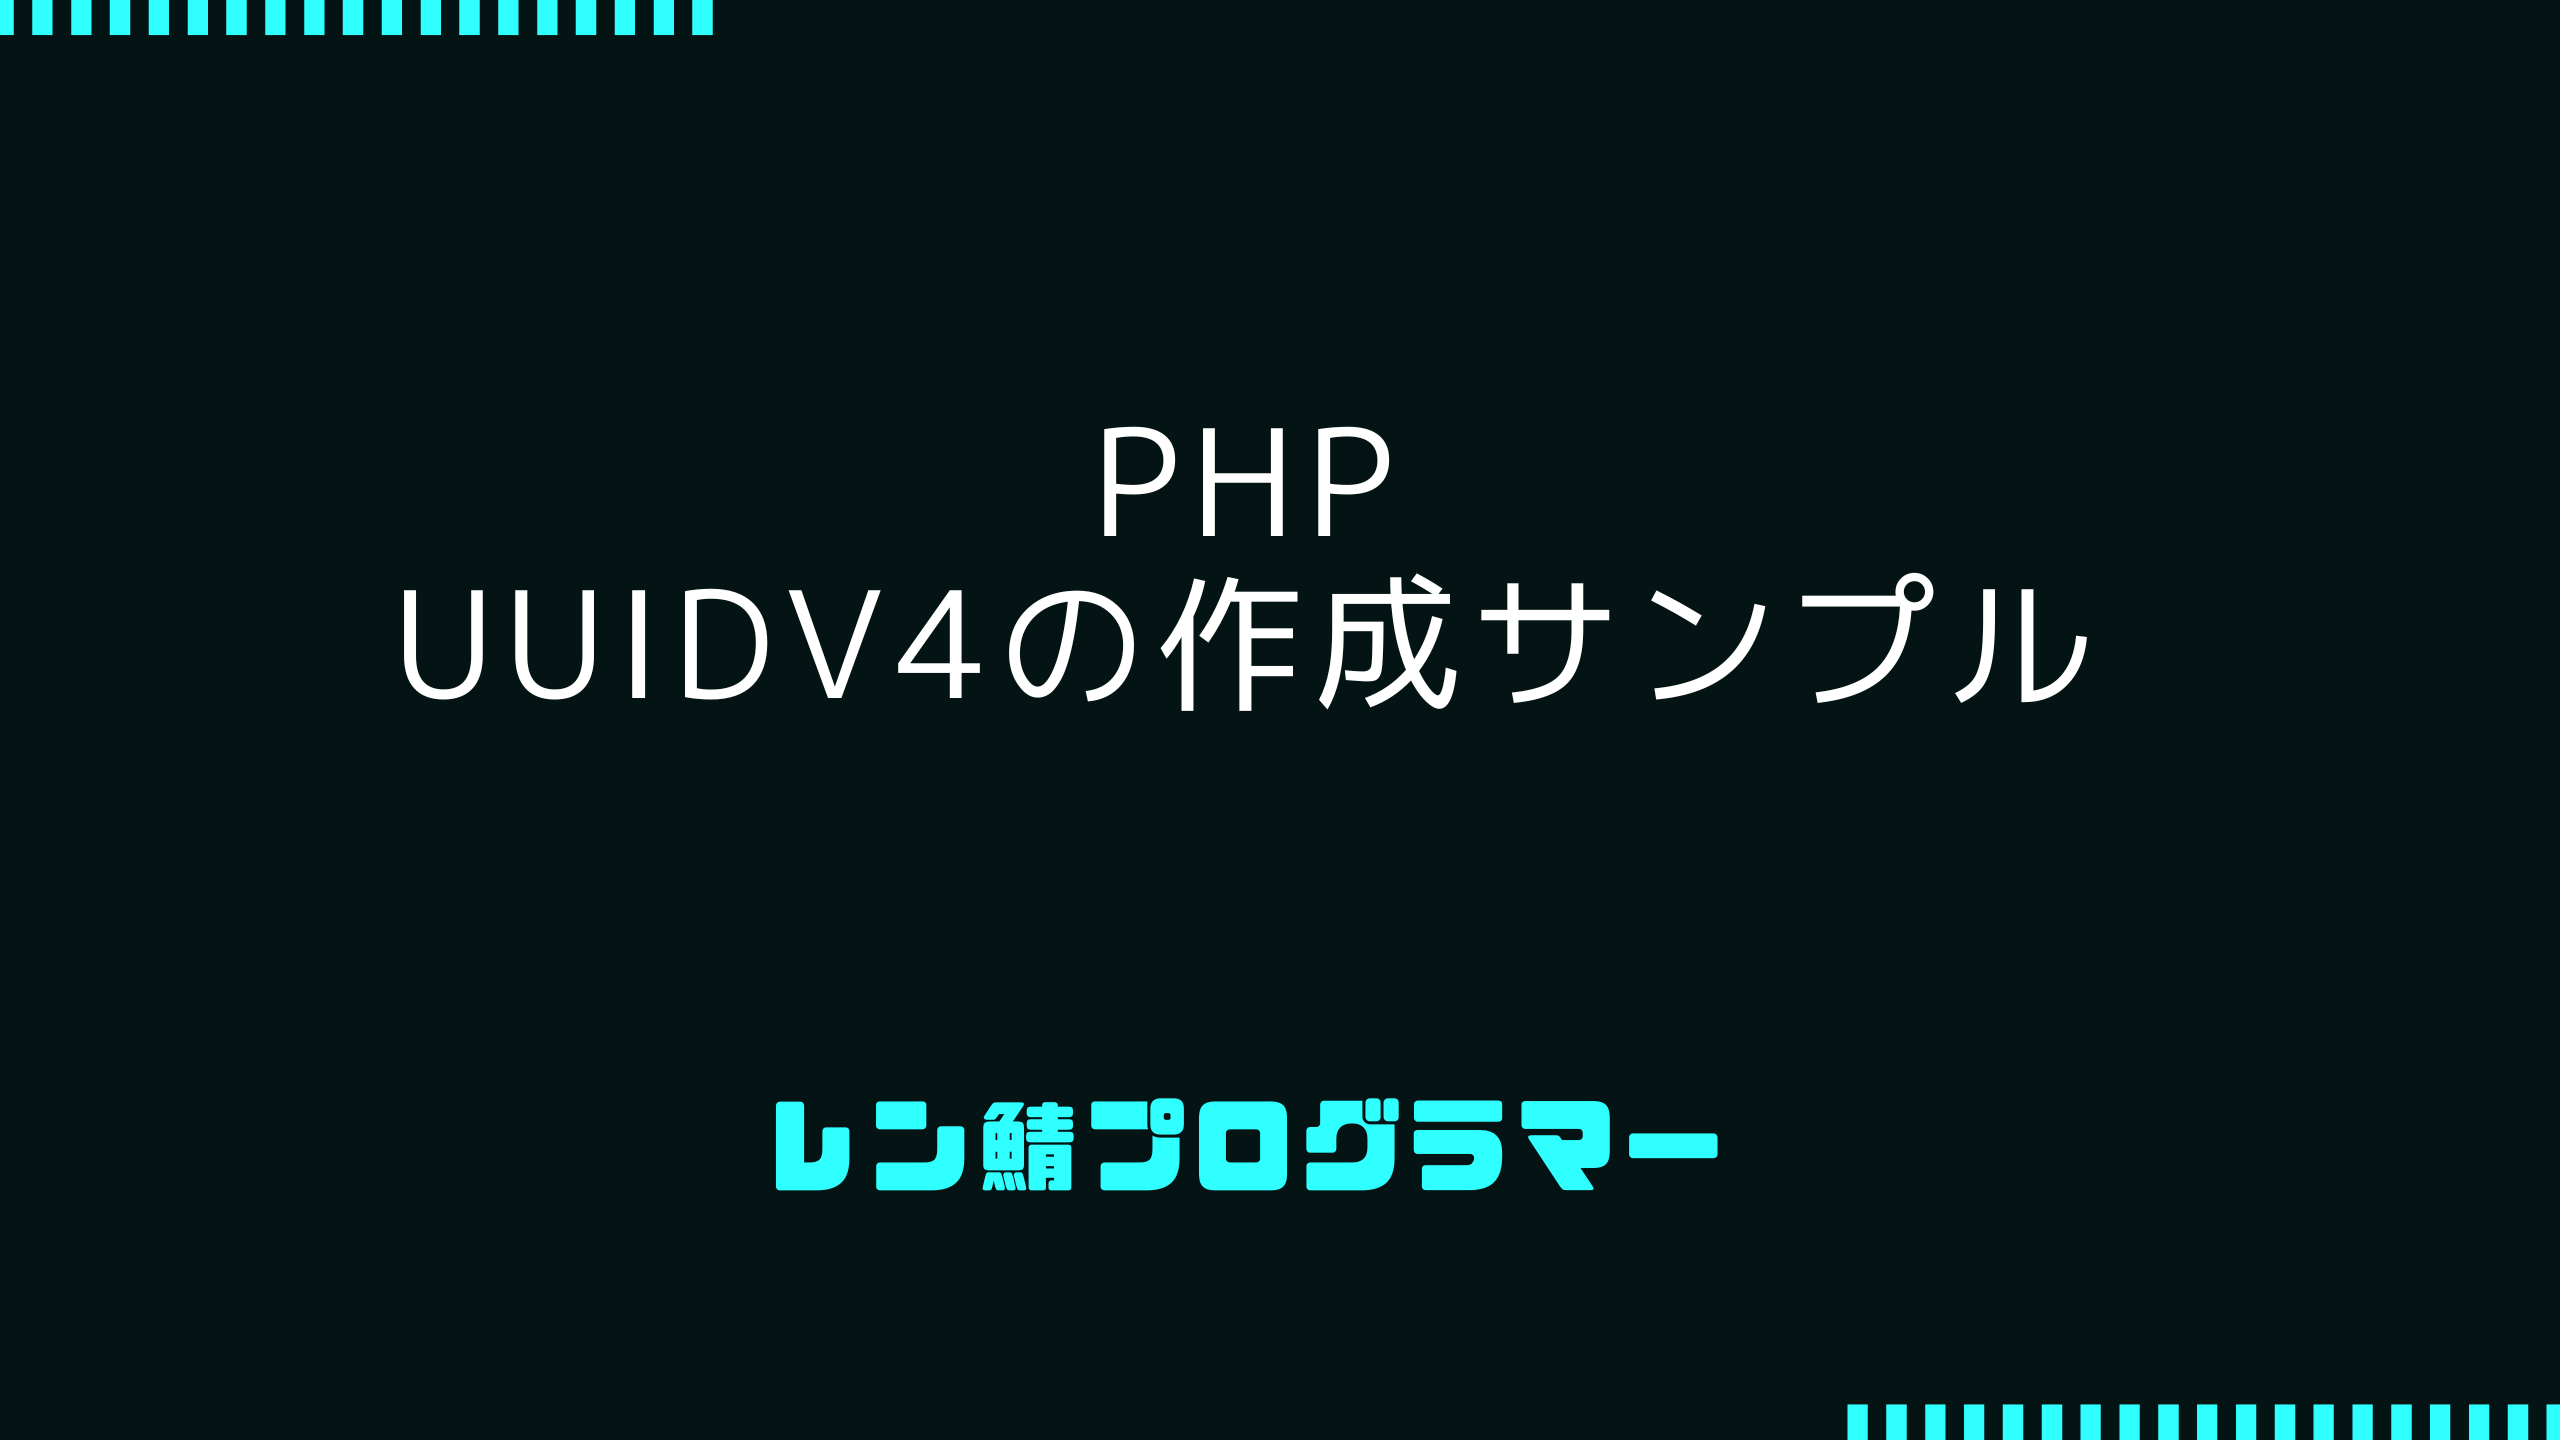 PHPでUUIDv4を作成するサンプルコード